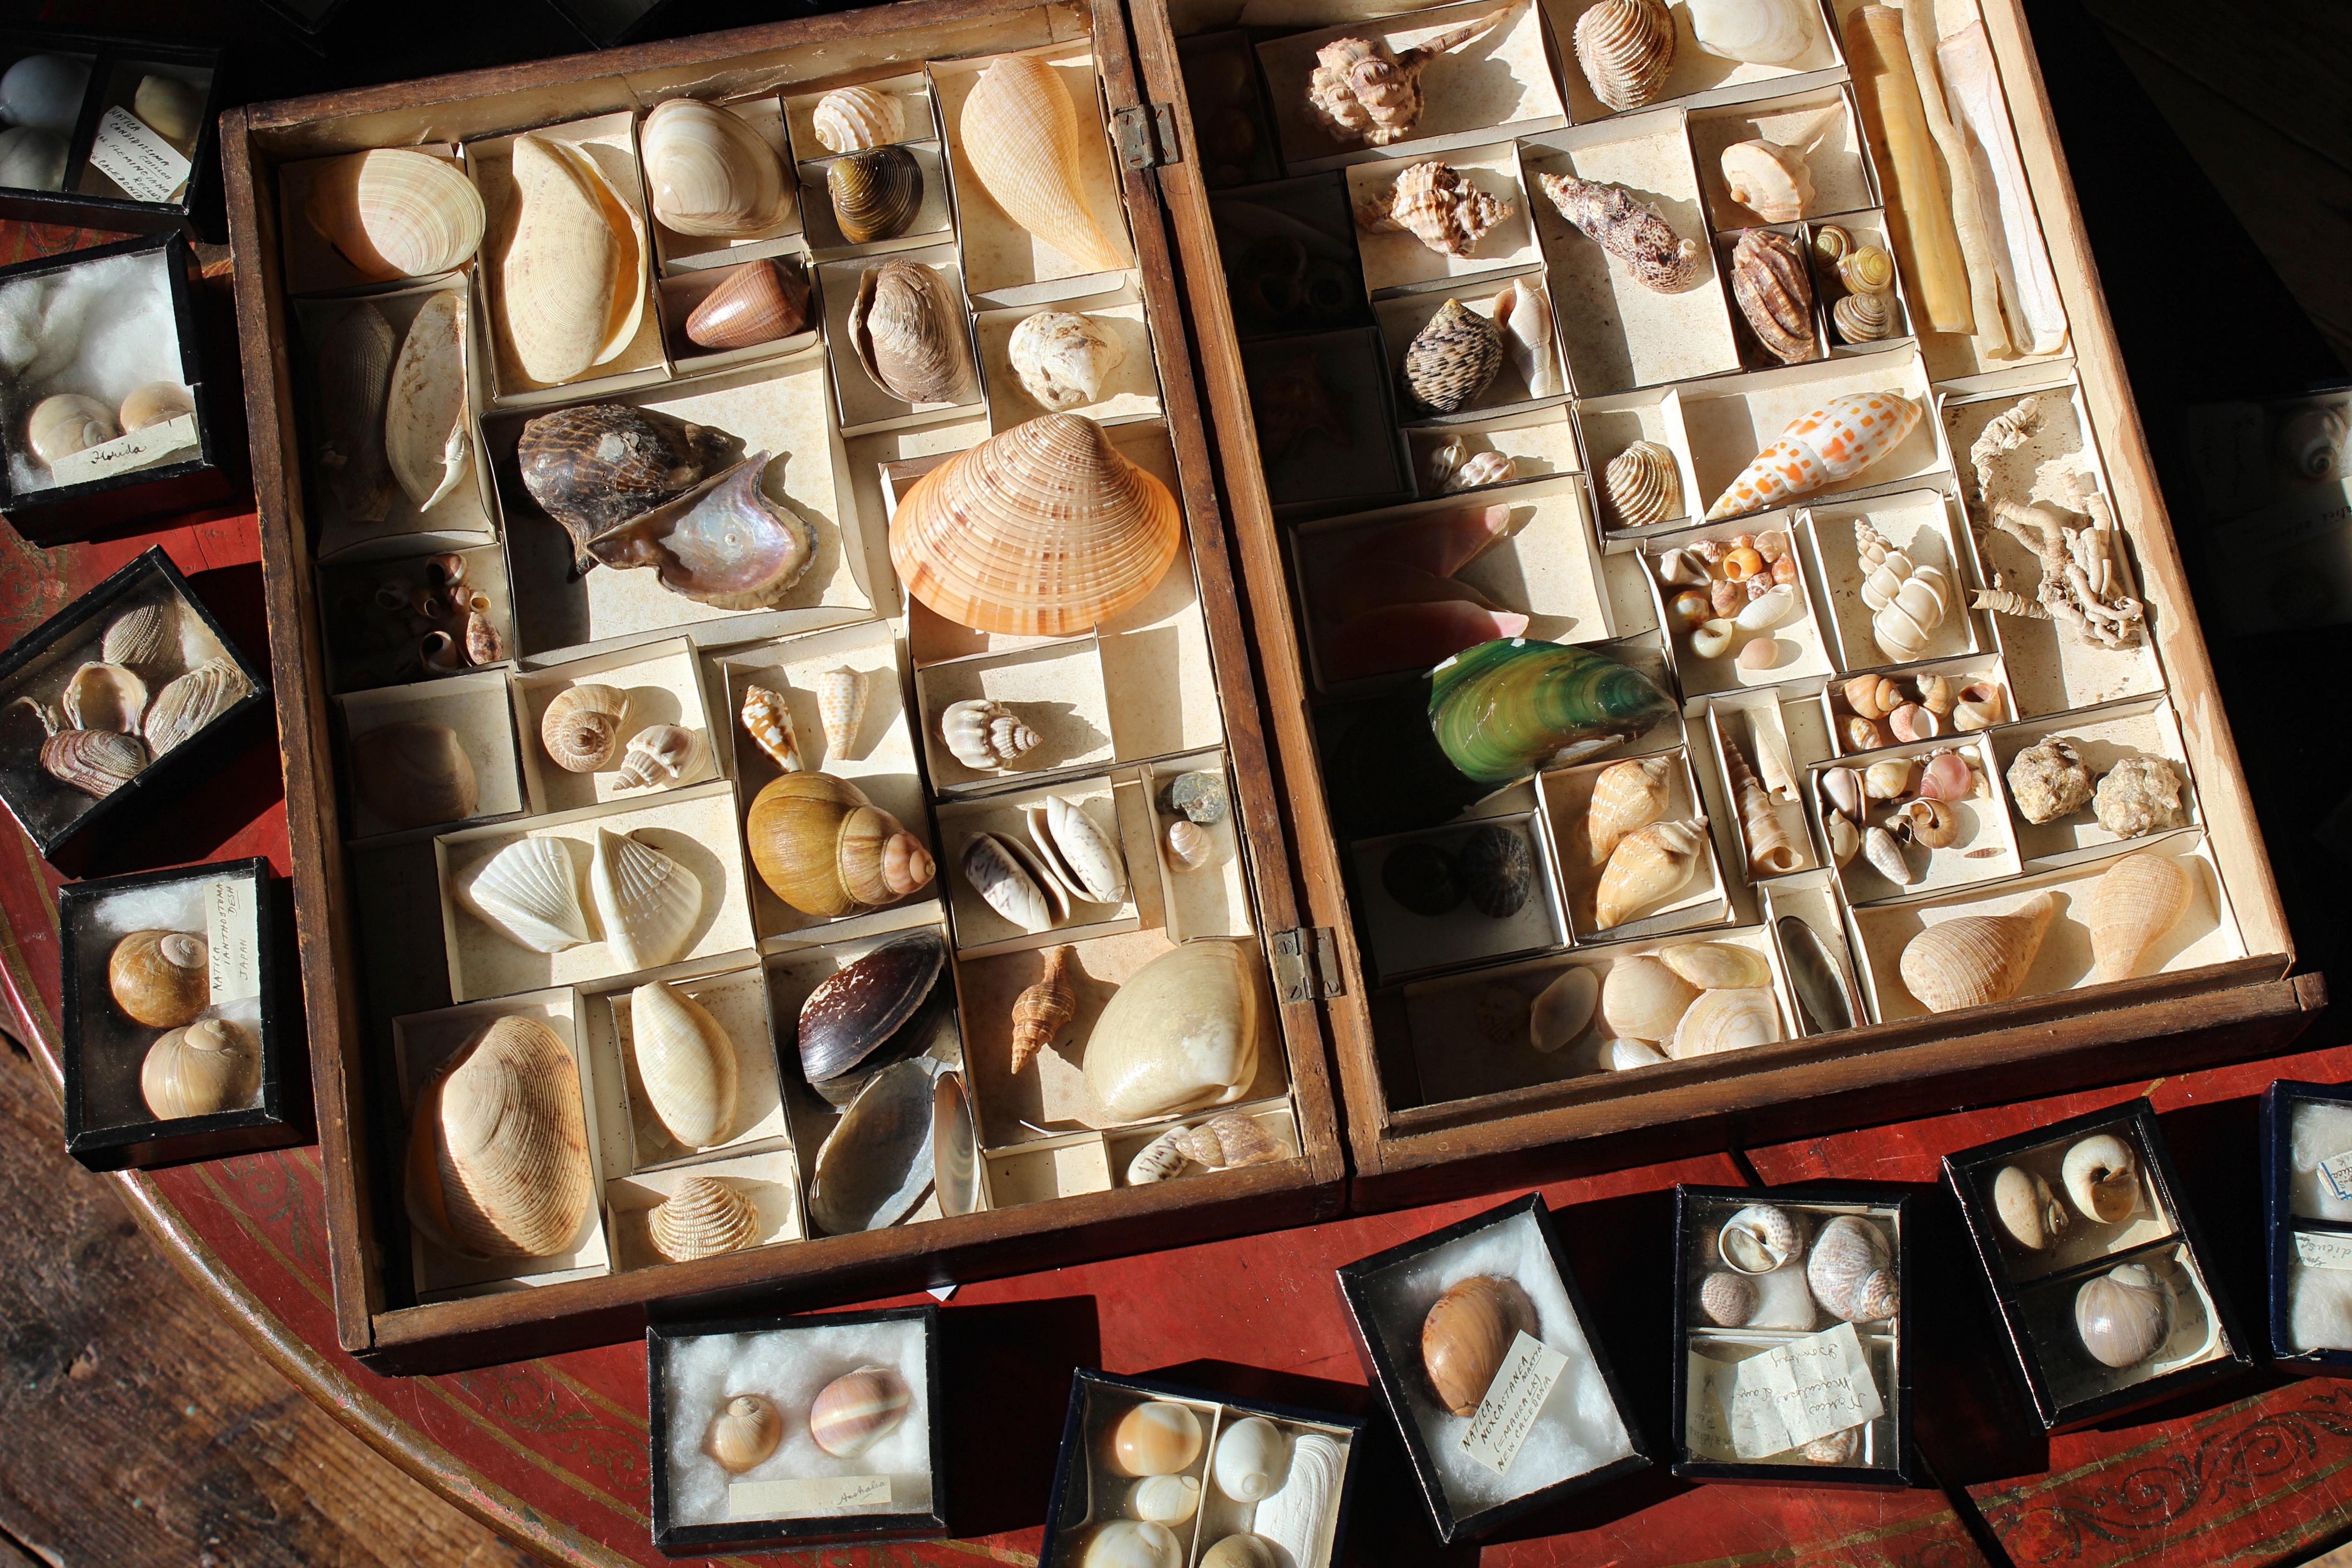 Une grande collection de spécimens de coquillages de la fin de l'époque victorienne, la majorité étant conservée dans sa boîte en pin, chaque spécimen ayant sa pochette en carton d'époque, le reste étant présenté dans des boîtes en carton bleu